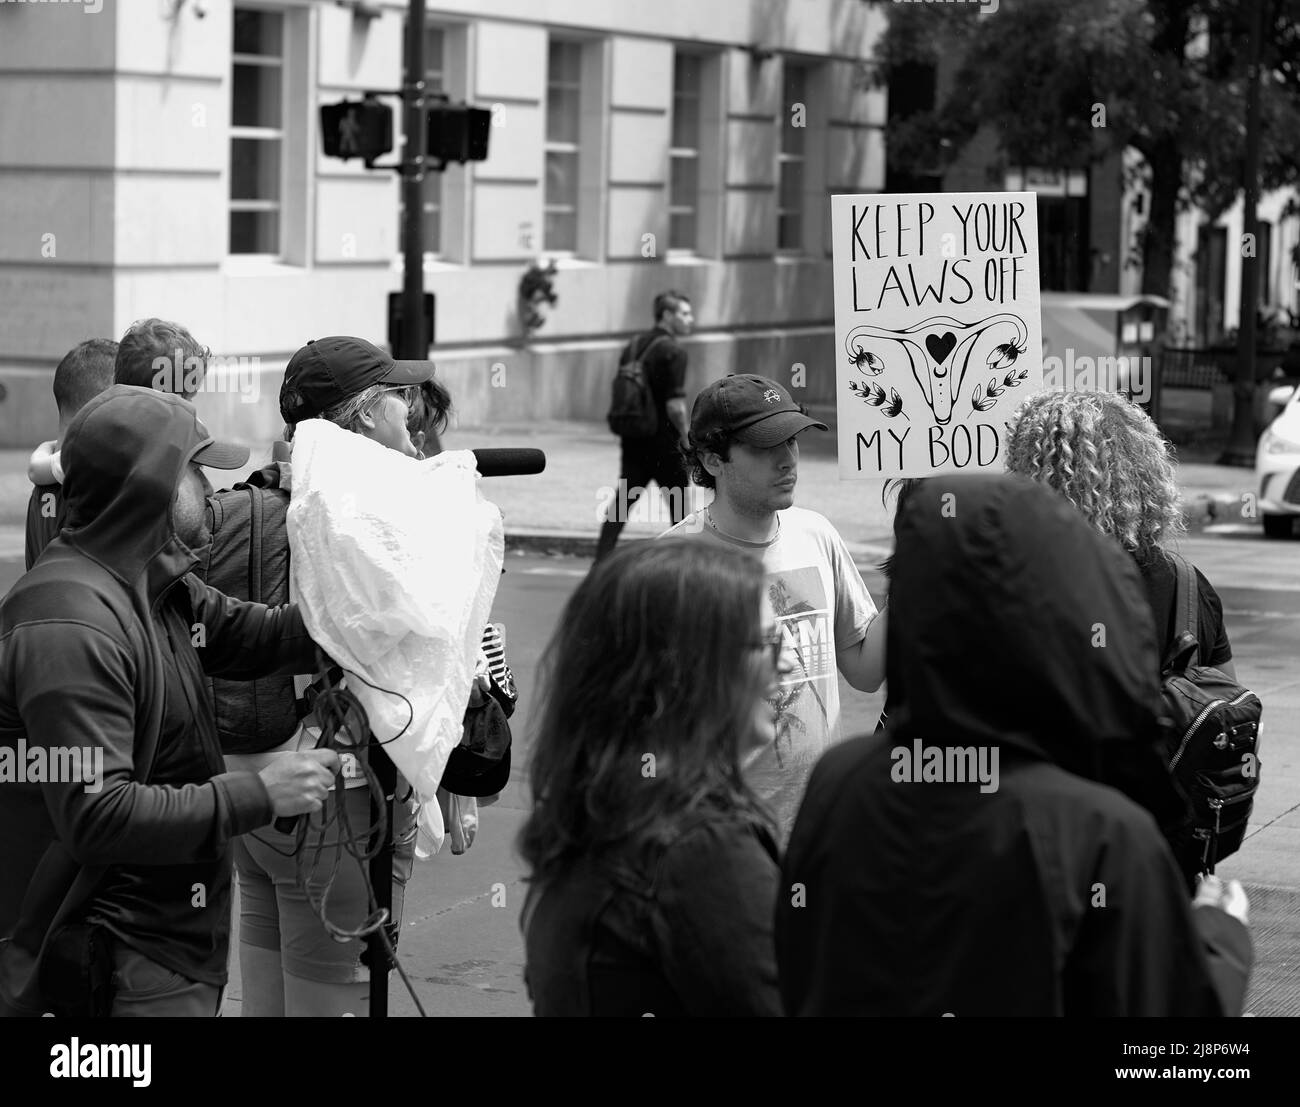 Aún de una entrevista durante una protesta contra el aborto. Foto de stock